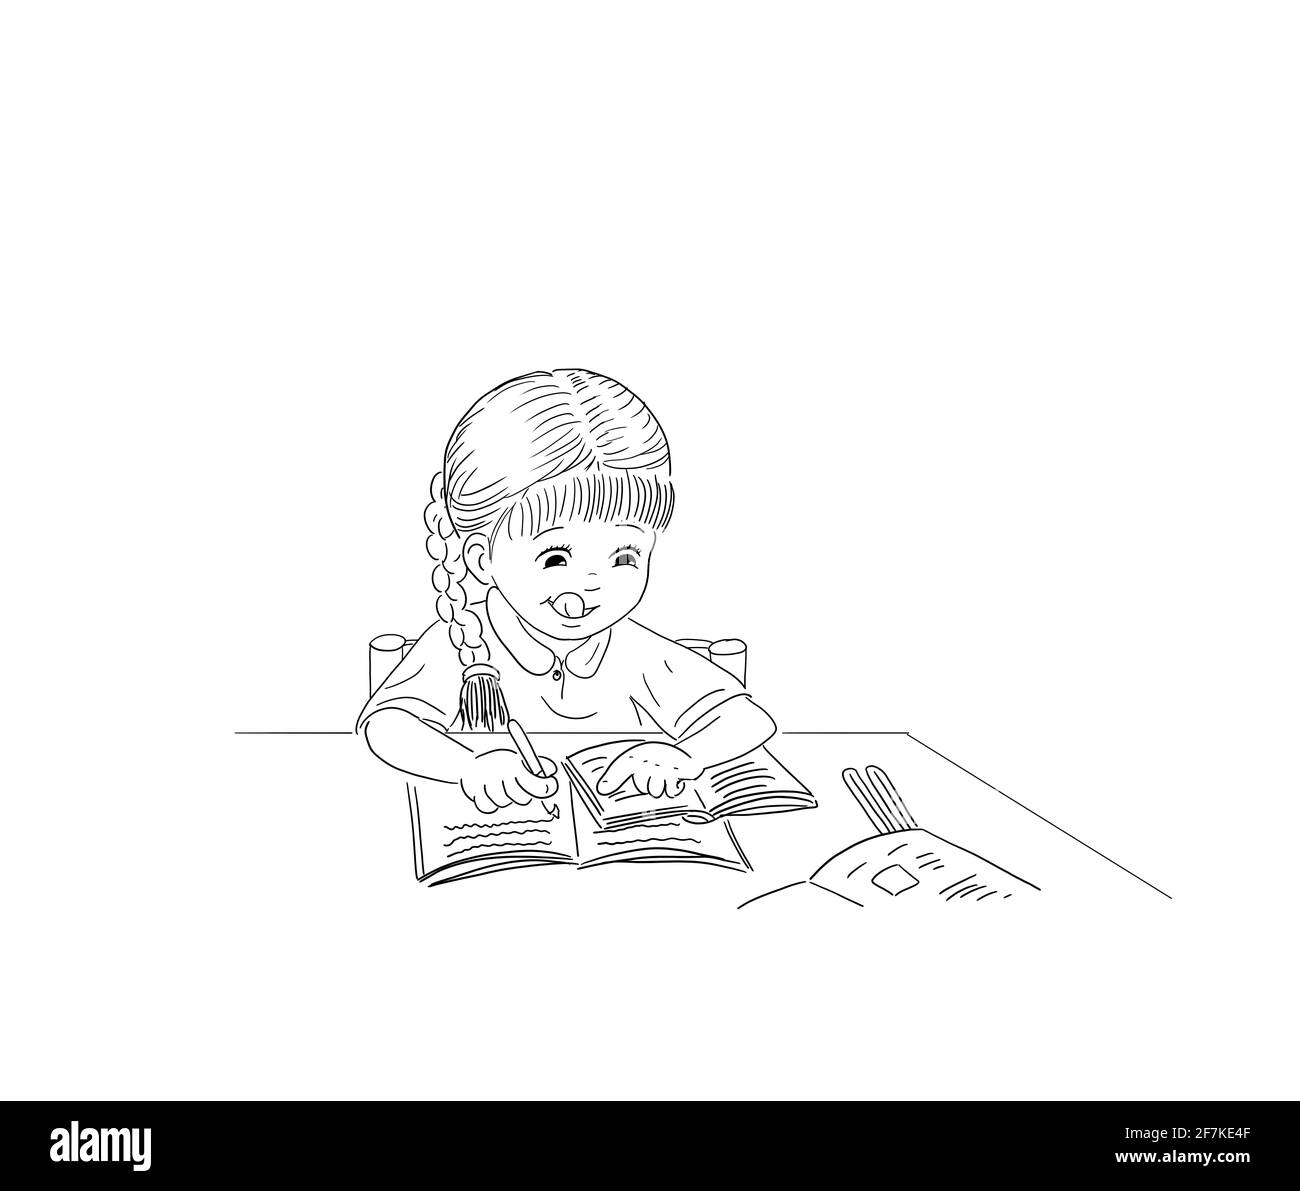 Mädchen schulmädchen Kind mit Zopf sitzt an der Tabelle Übung Bücher Bildung Lernmaterial Schule Hausaufgaben Home Schulbildung lernen schreiben Schularbeiten Stockfoto